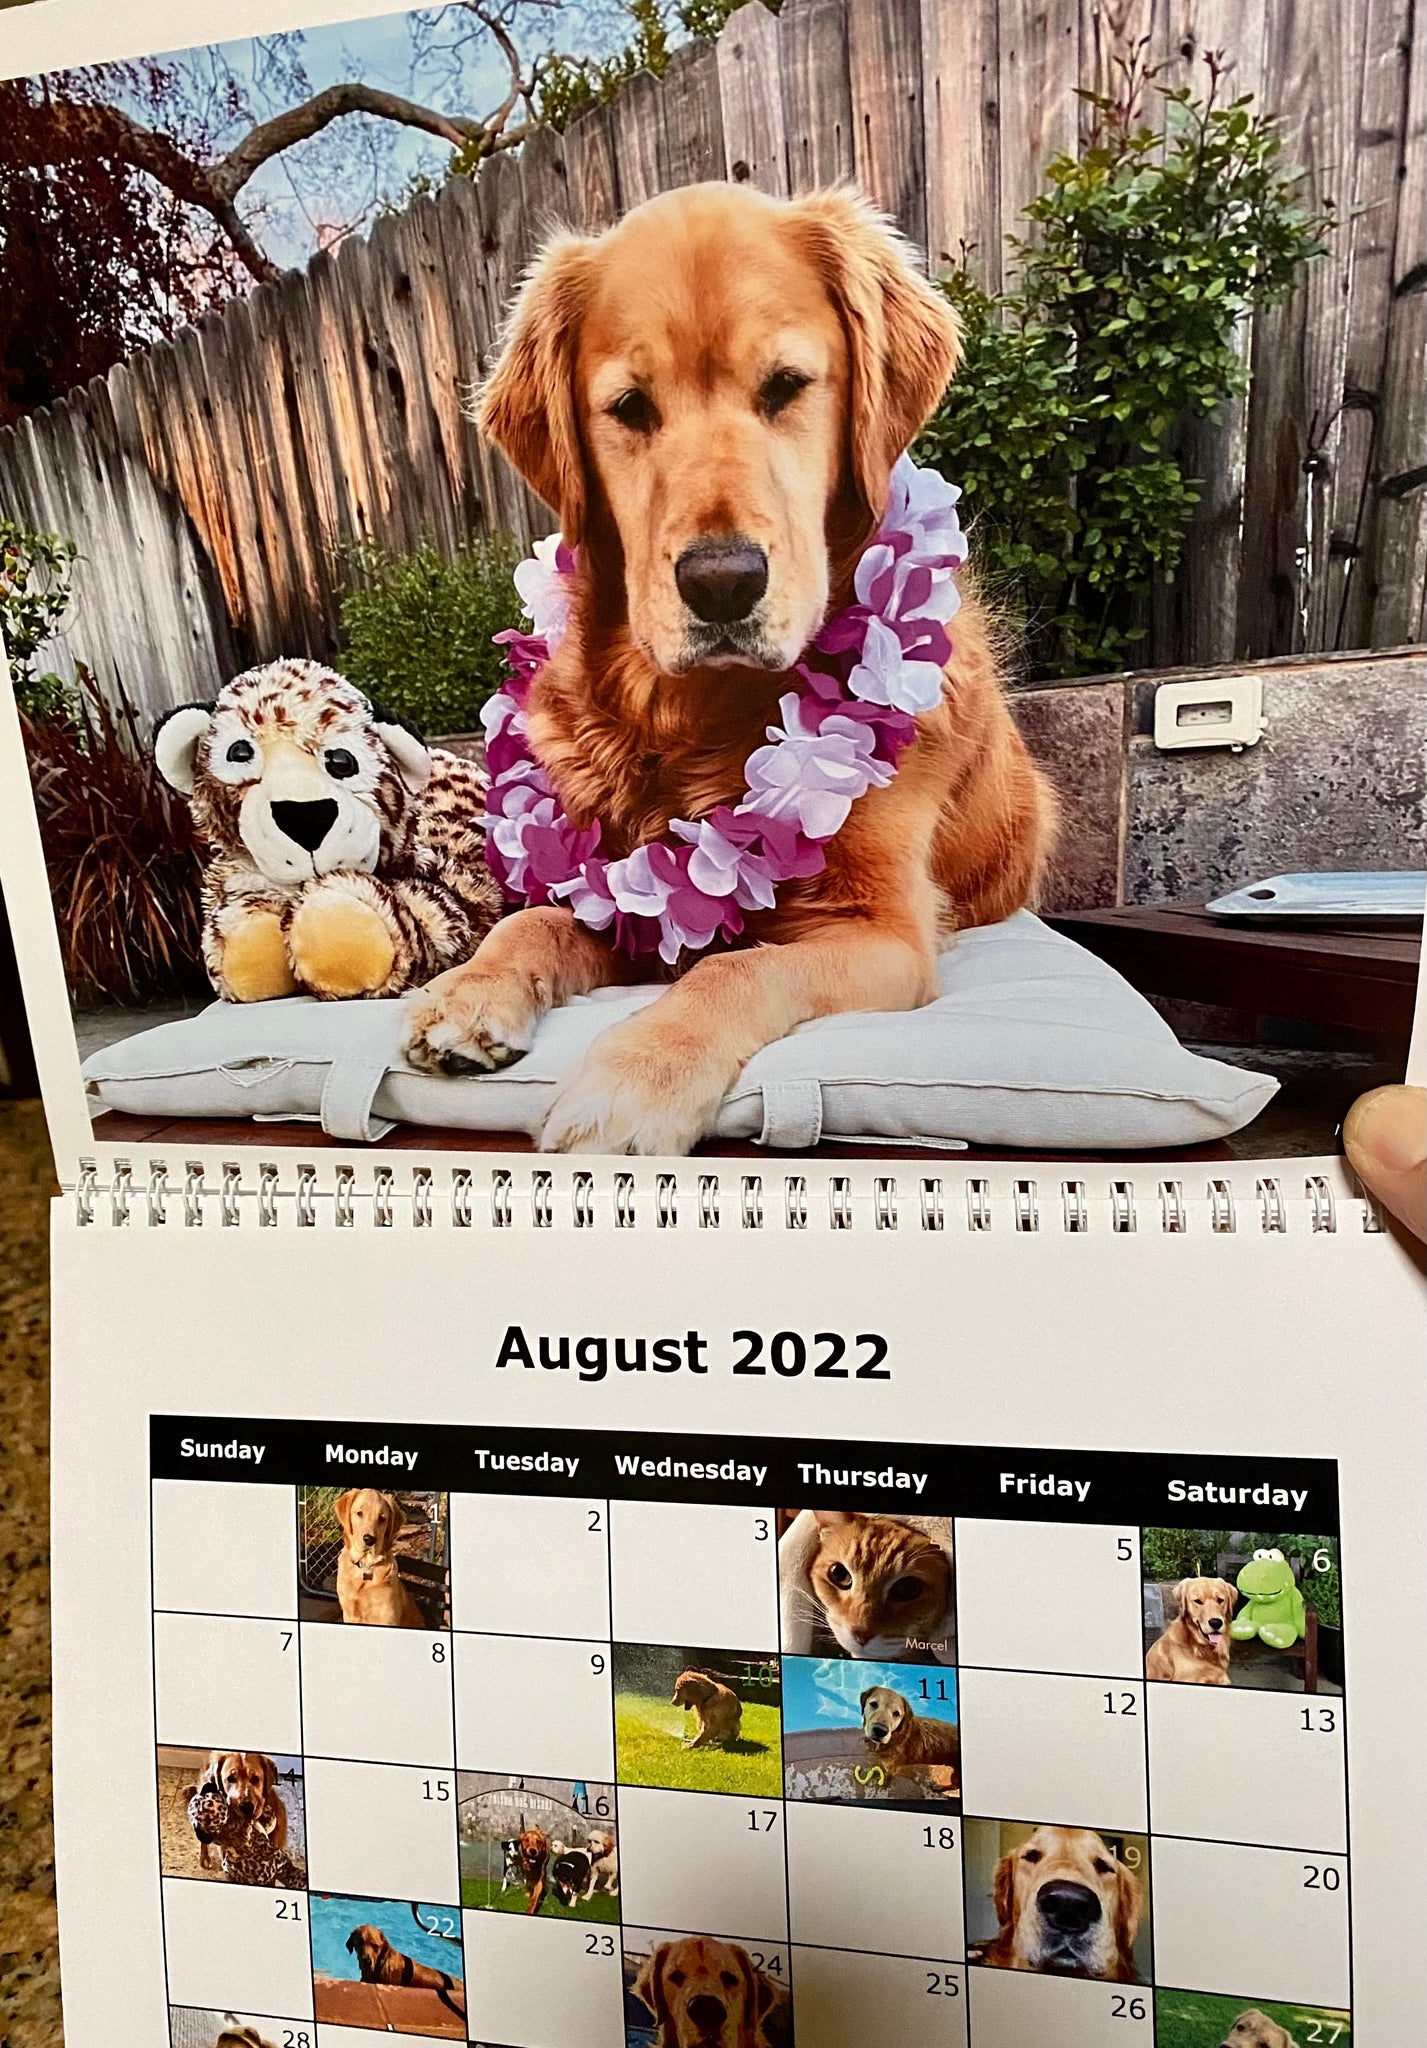 Henry’s 2022 Calendar